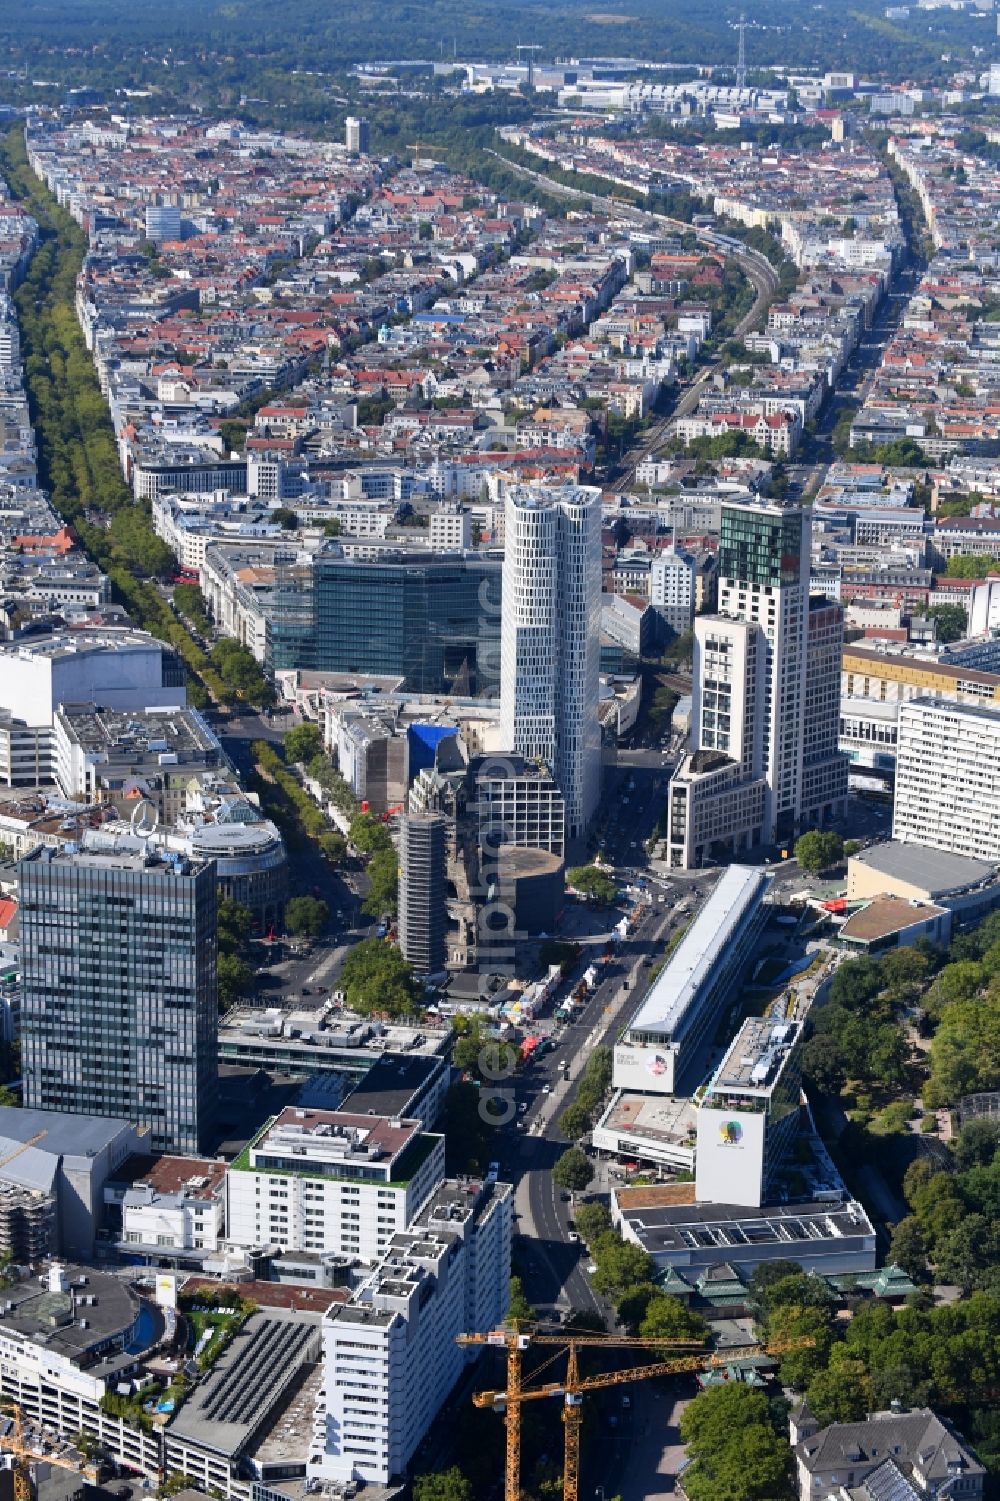 Aerial image Berlin - Kaiser-Wilhelm-Gedaechtnis-Kirche on Breitscheidplatz in the city in the district Charlottenburg in Berlin, Germany